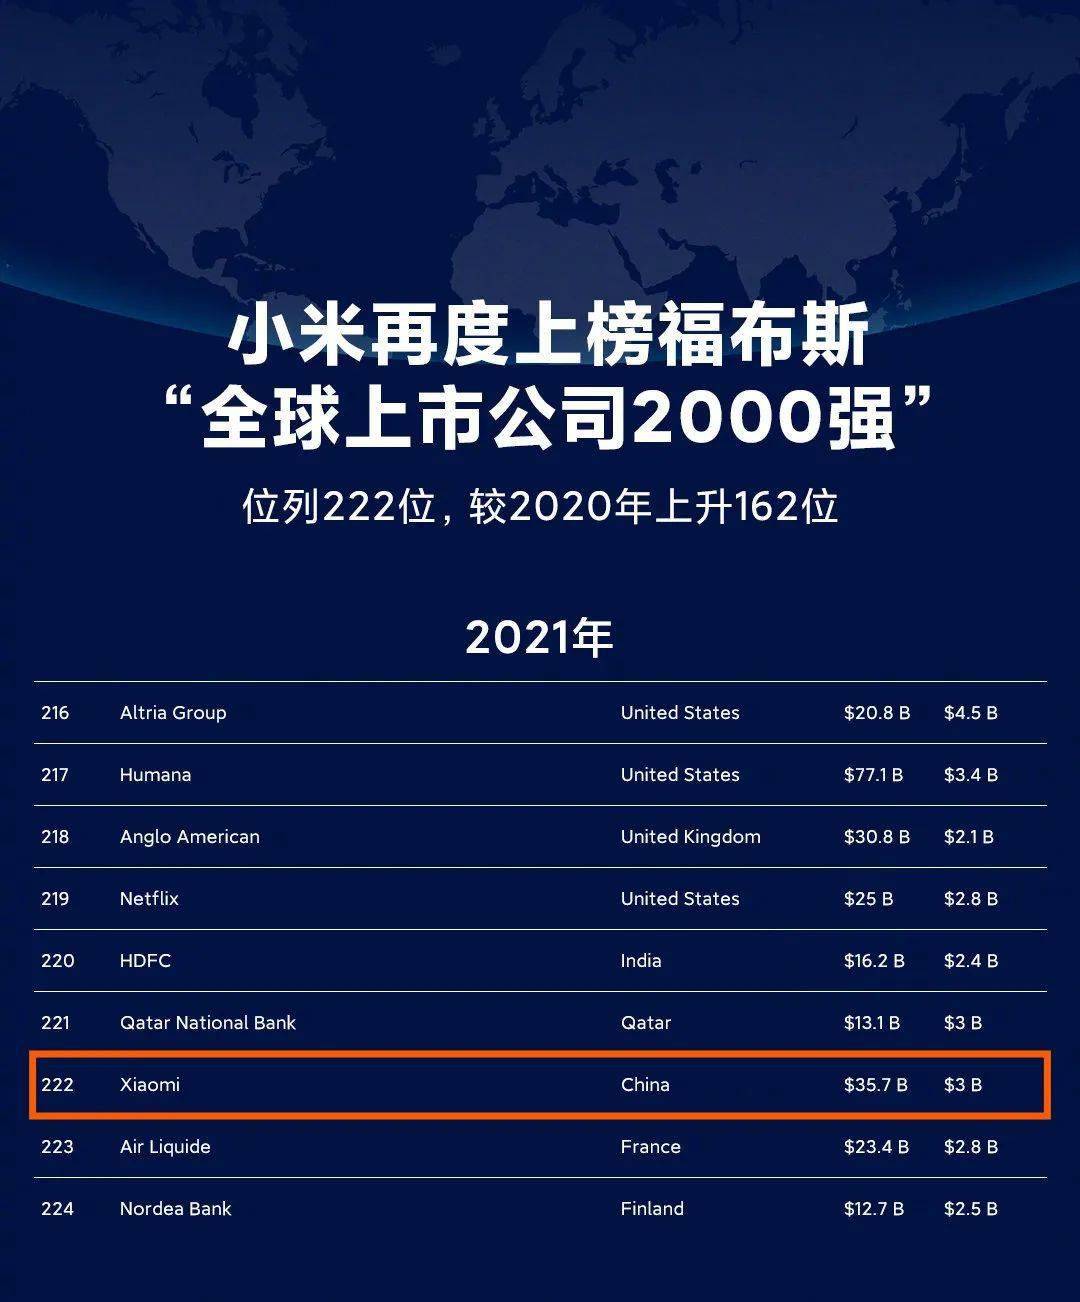 全球企业排行_福布斯发布全球企业2000强,阿里排名23腾讯排名29